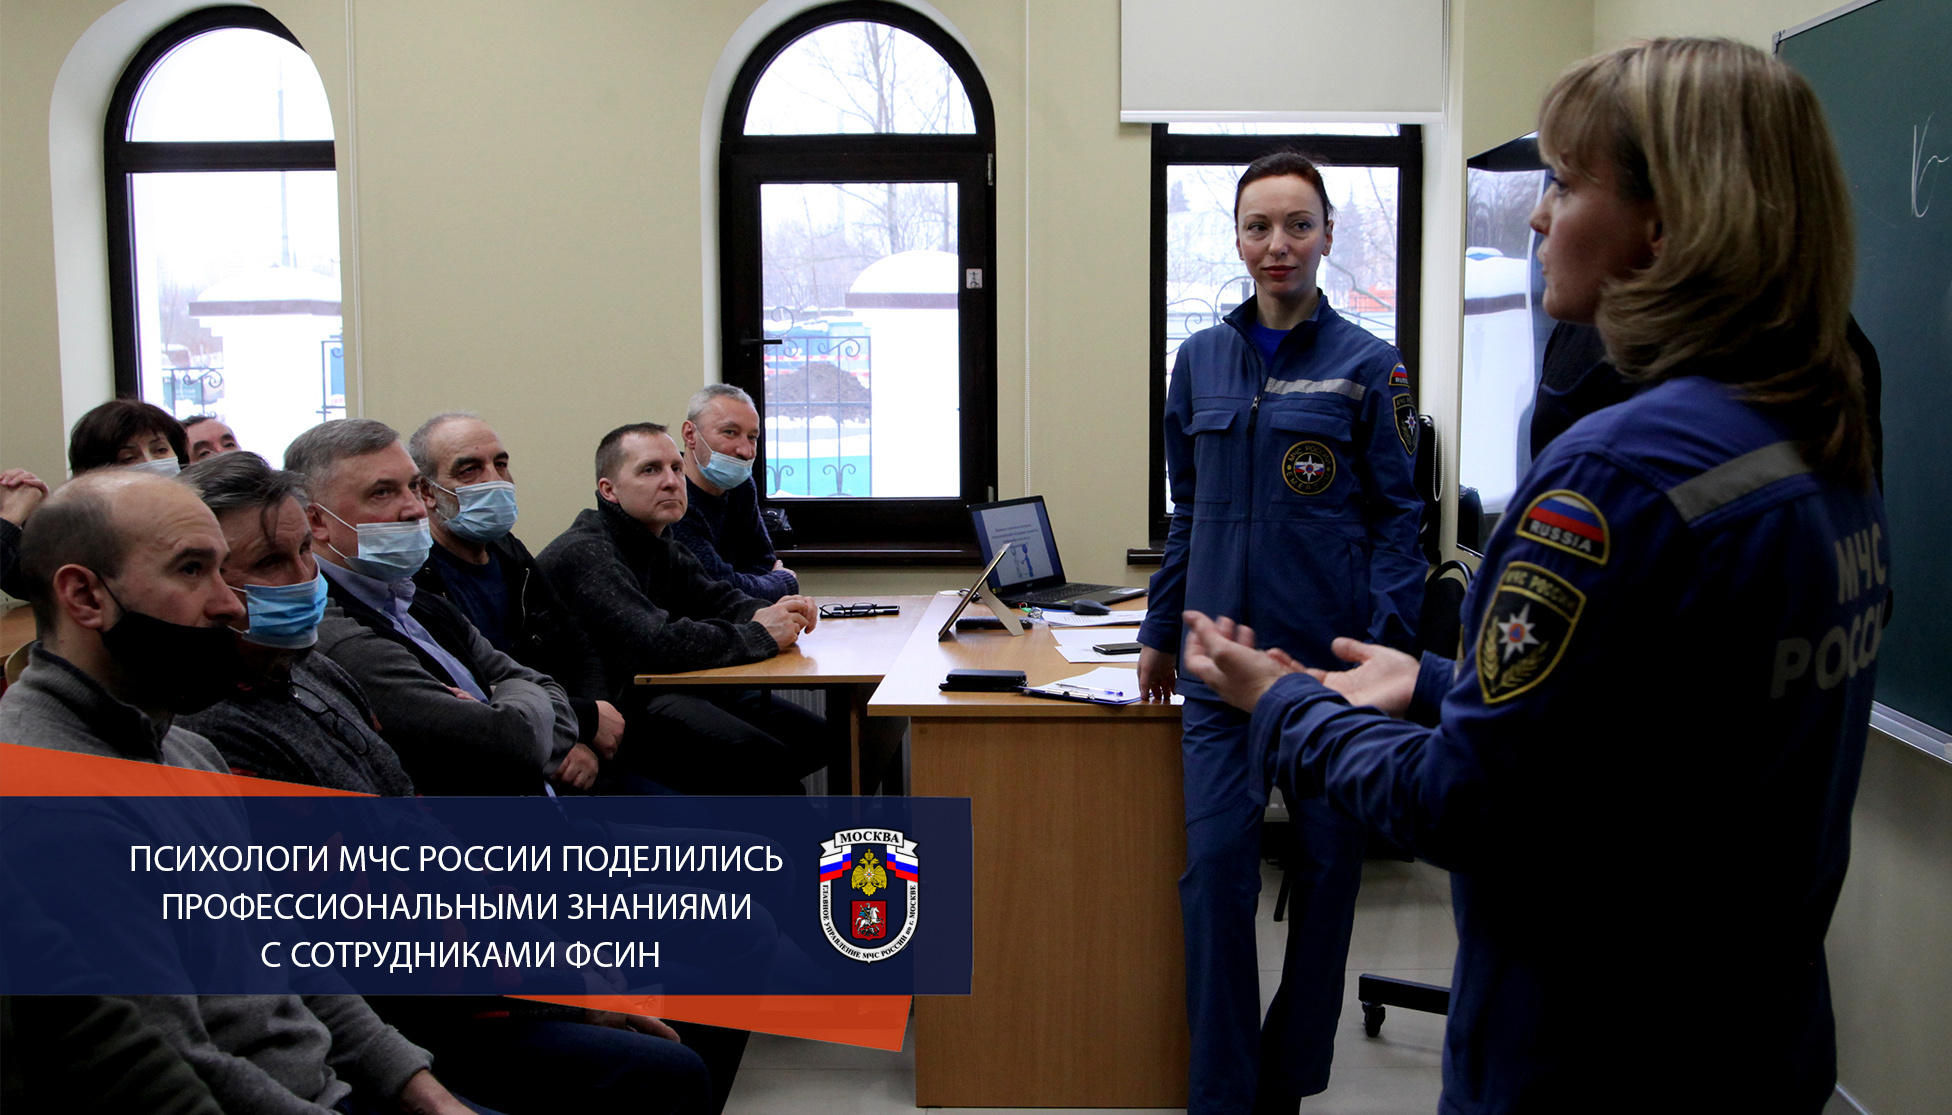 Психологи МЧС России поделились профессиональными знаниями с сотрудниками ФСИН